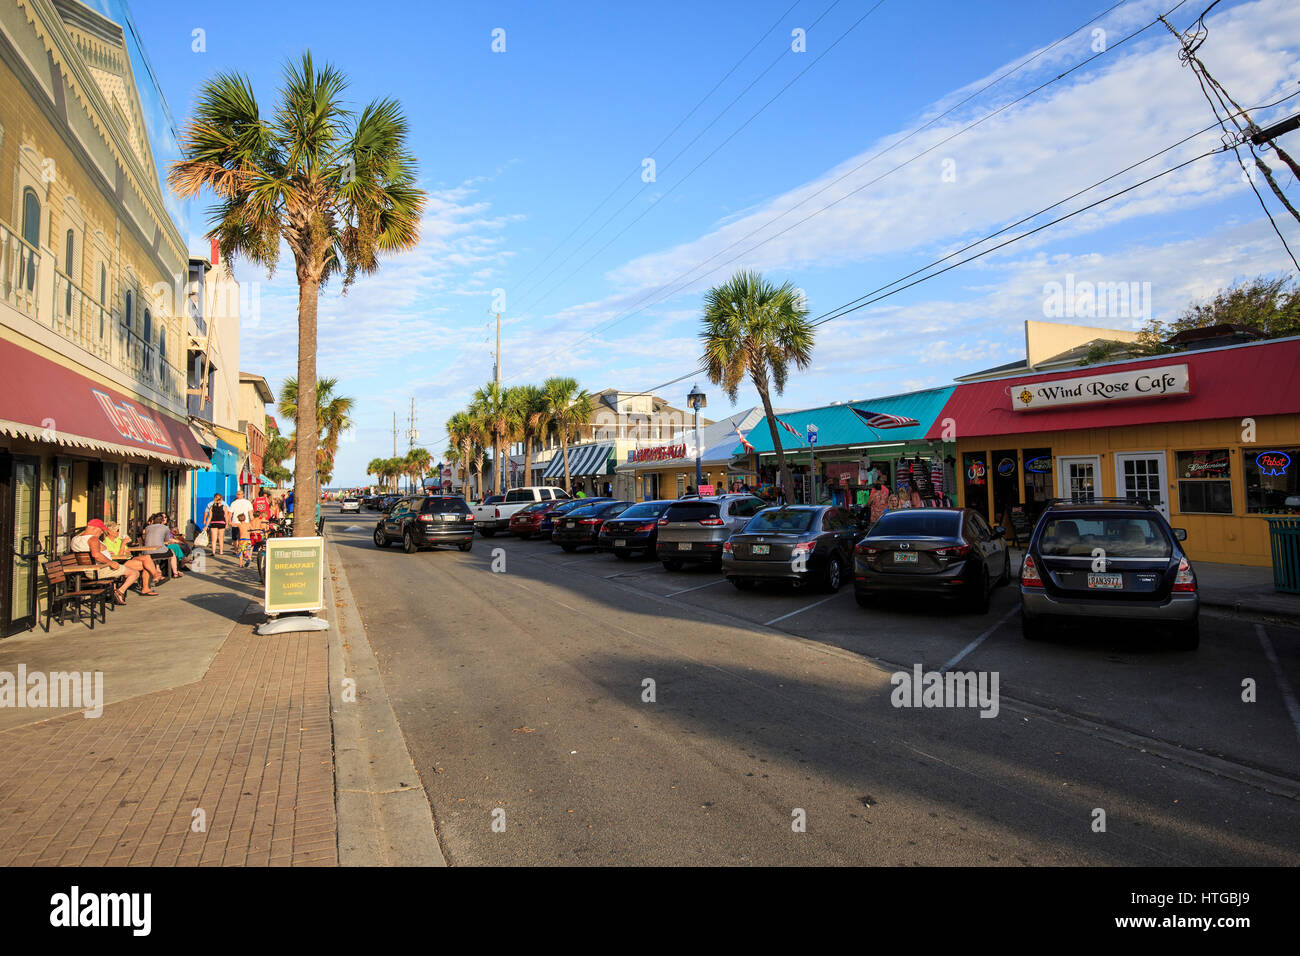 Touristischen Viertel mit Geschäften und an der Straße parken auf Tybee Island, Georgia Stockfoto